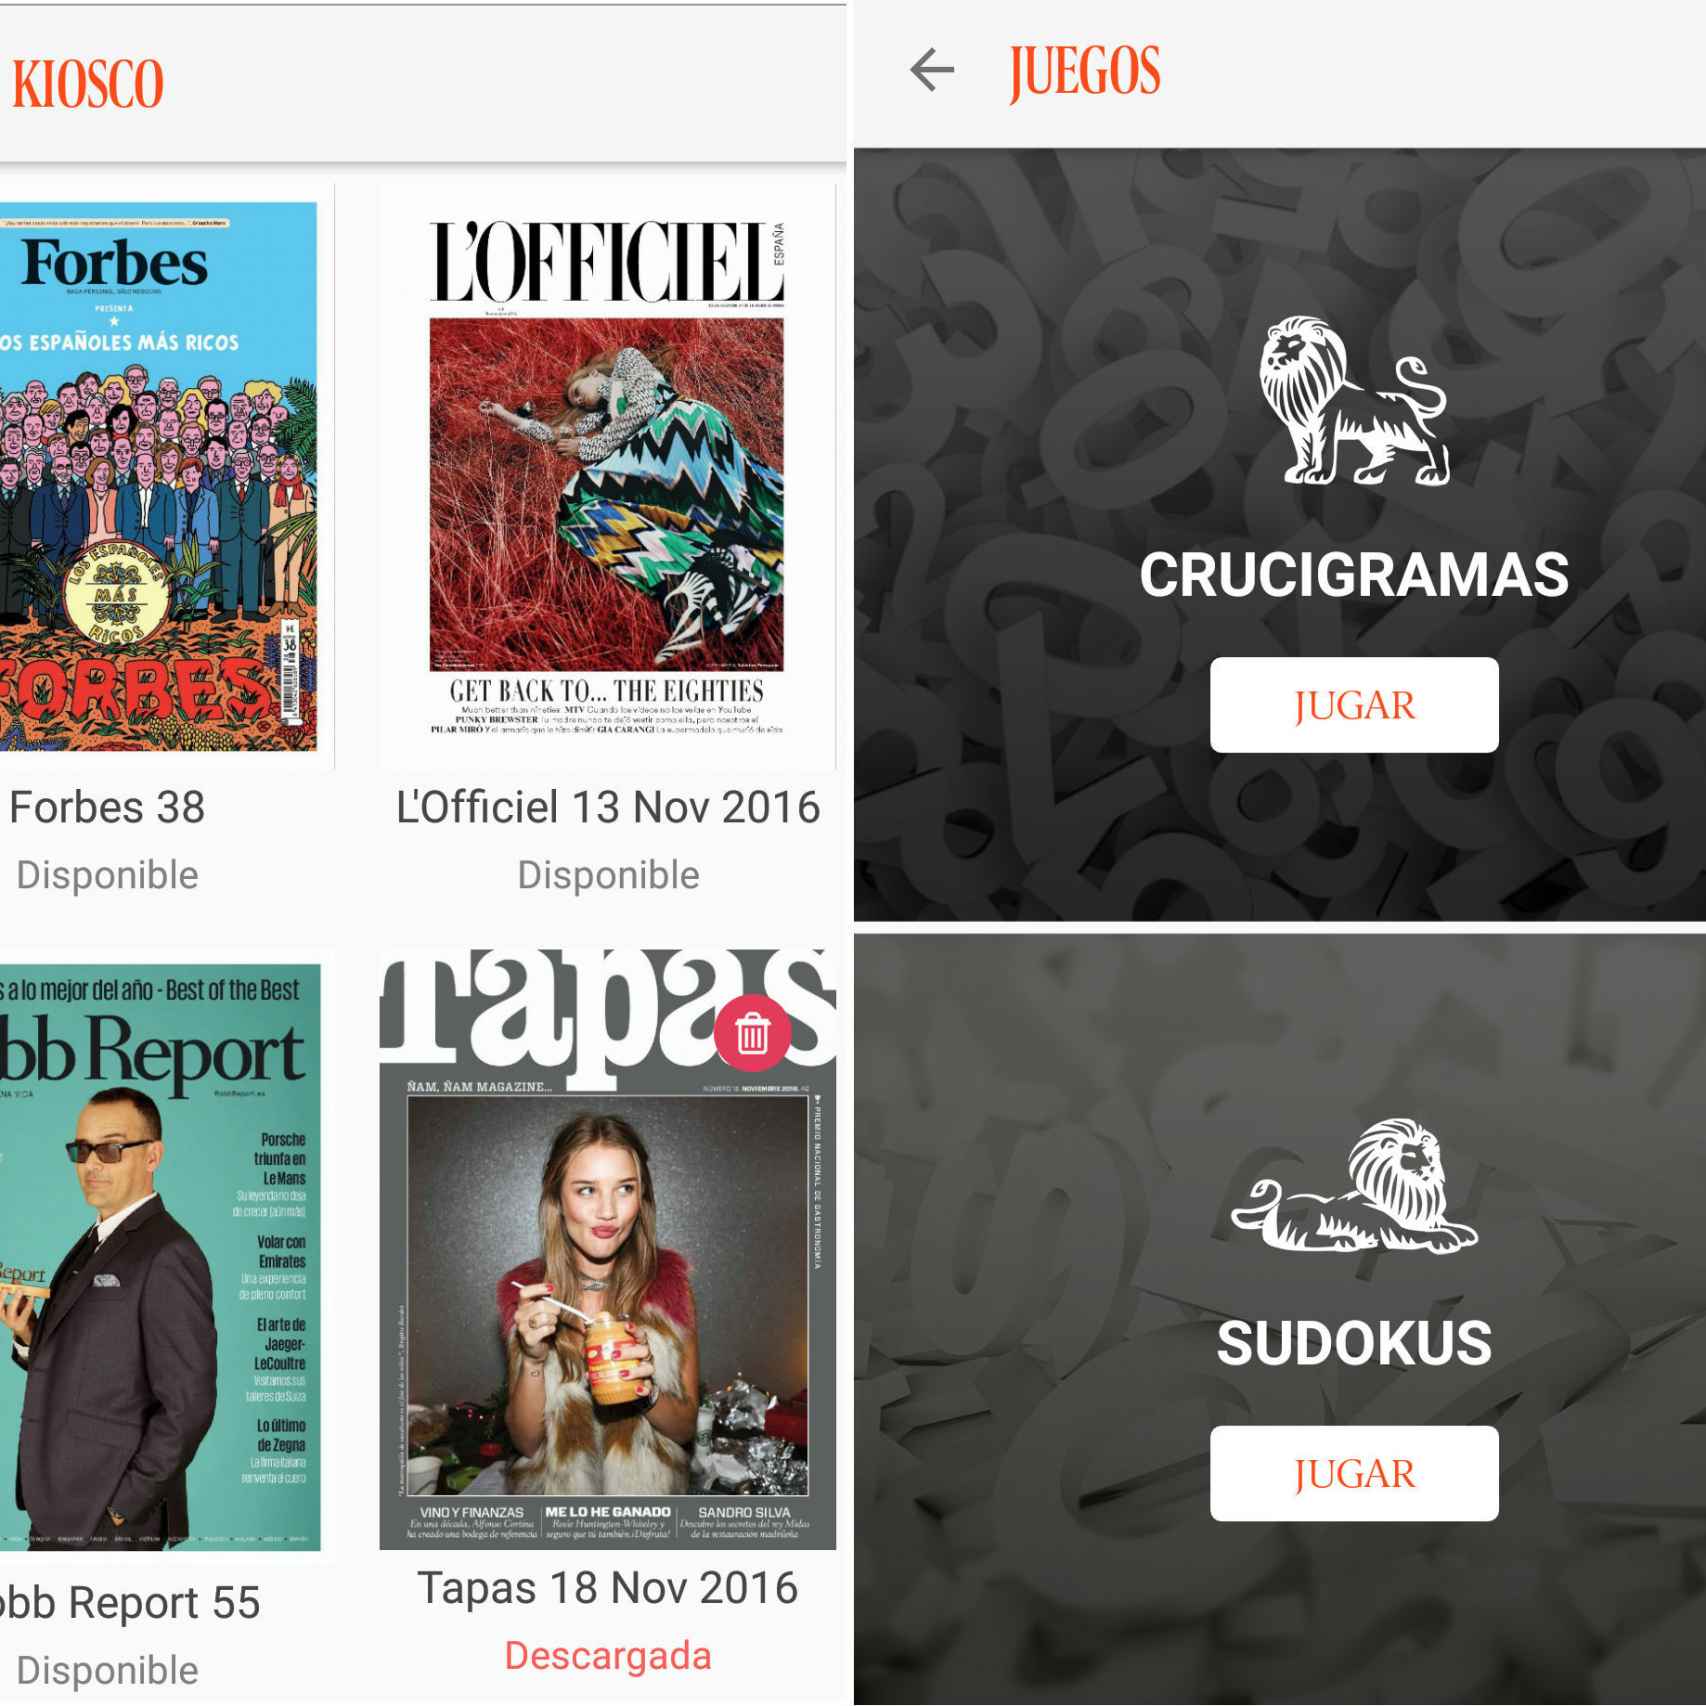 Las revistas del Grupo Spainmedia estarán disponibles en nuestra aplicación